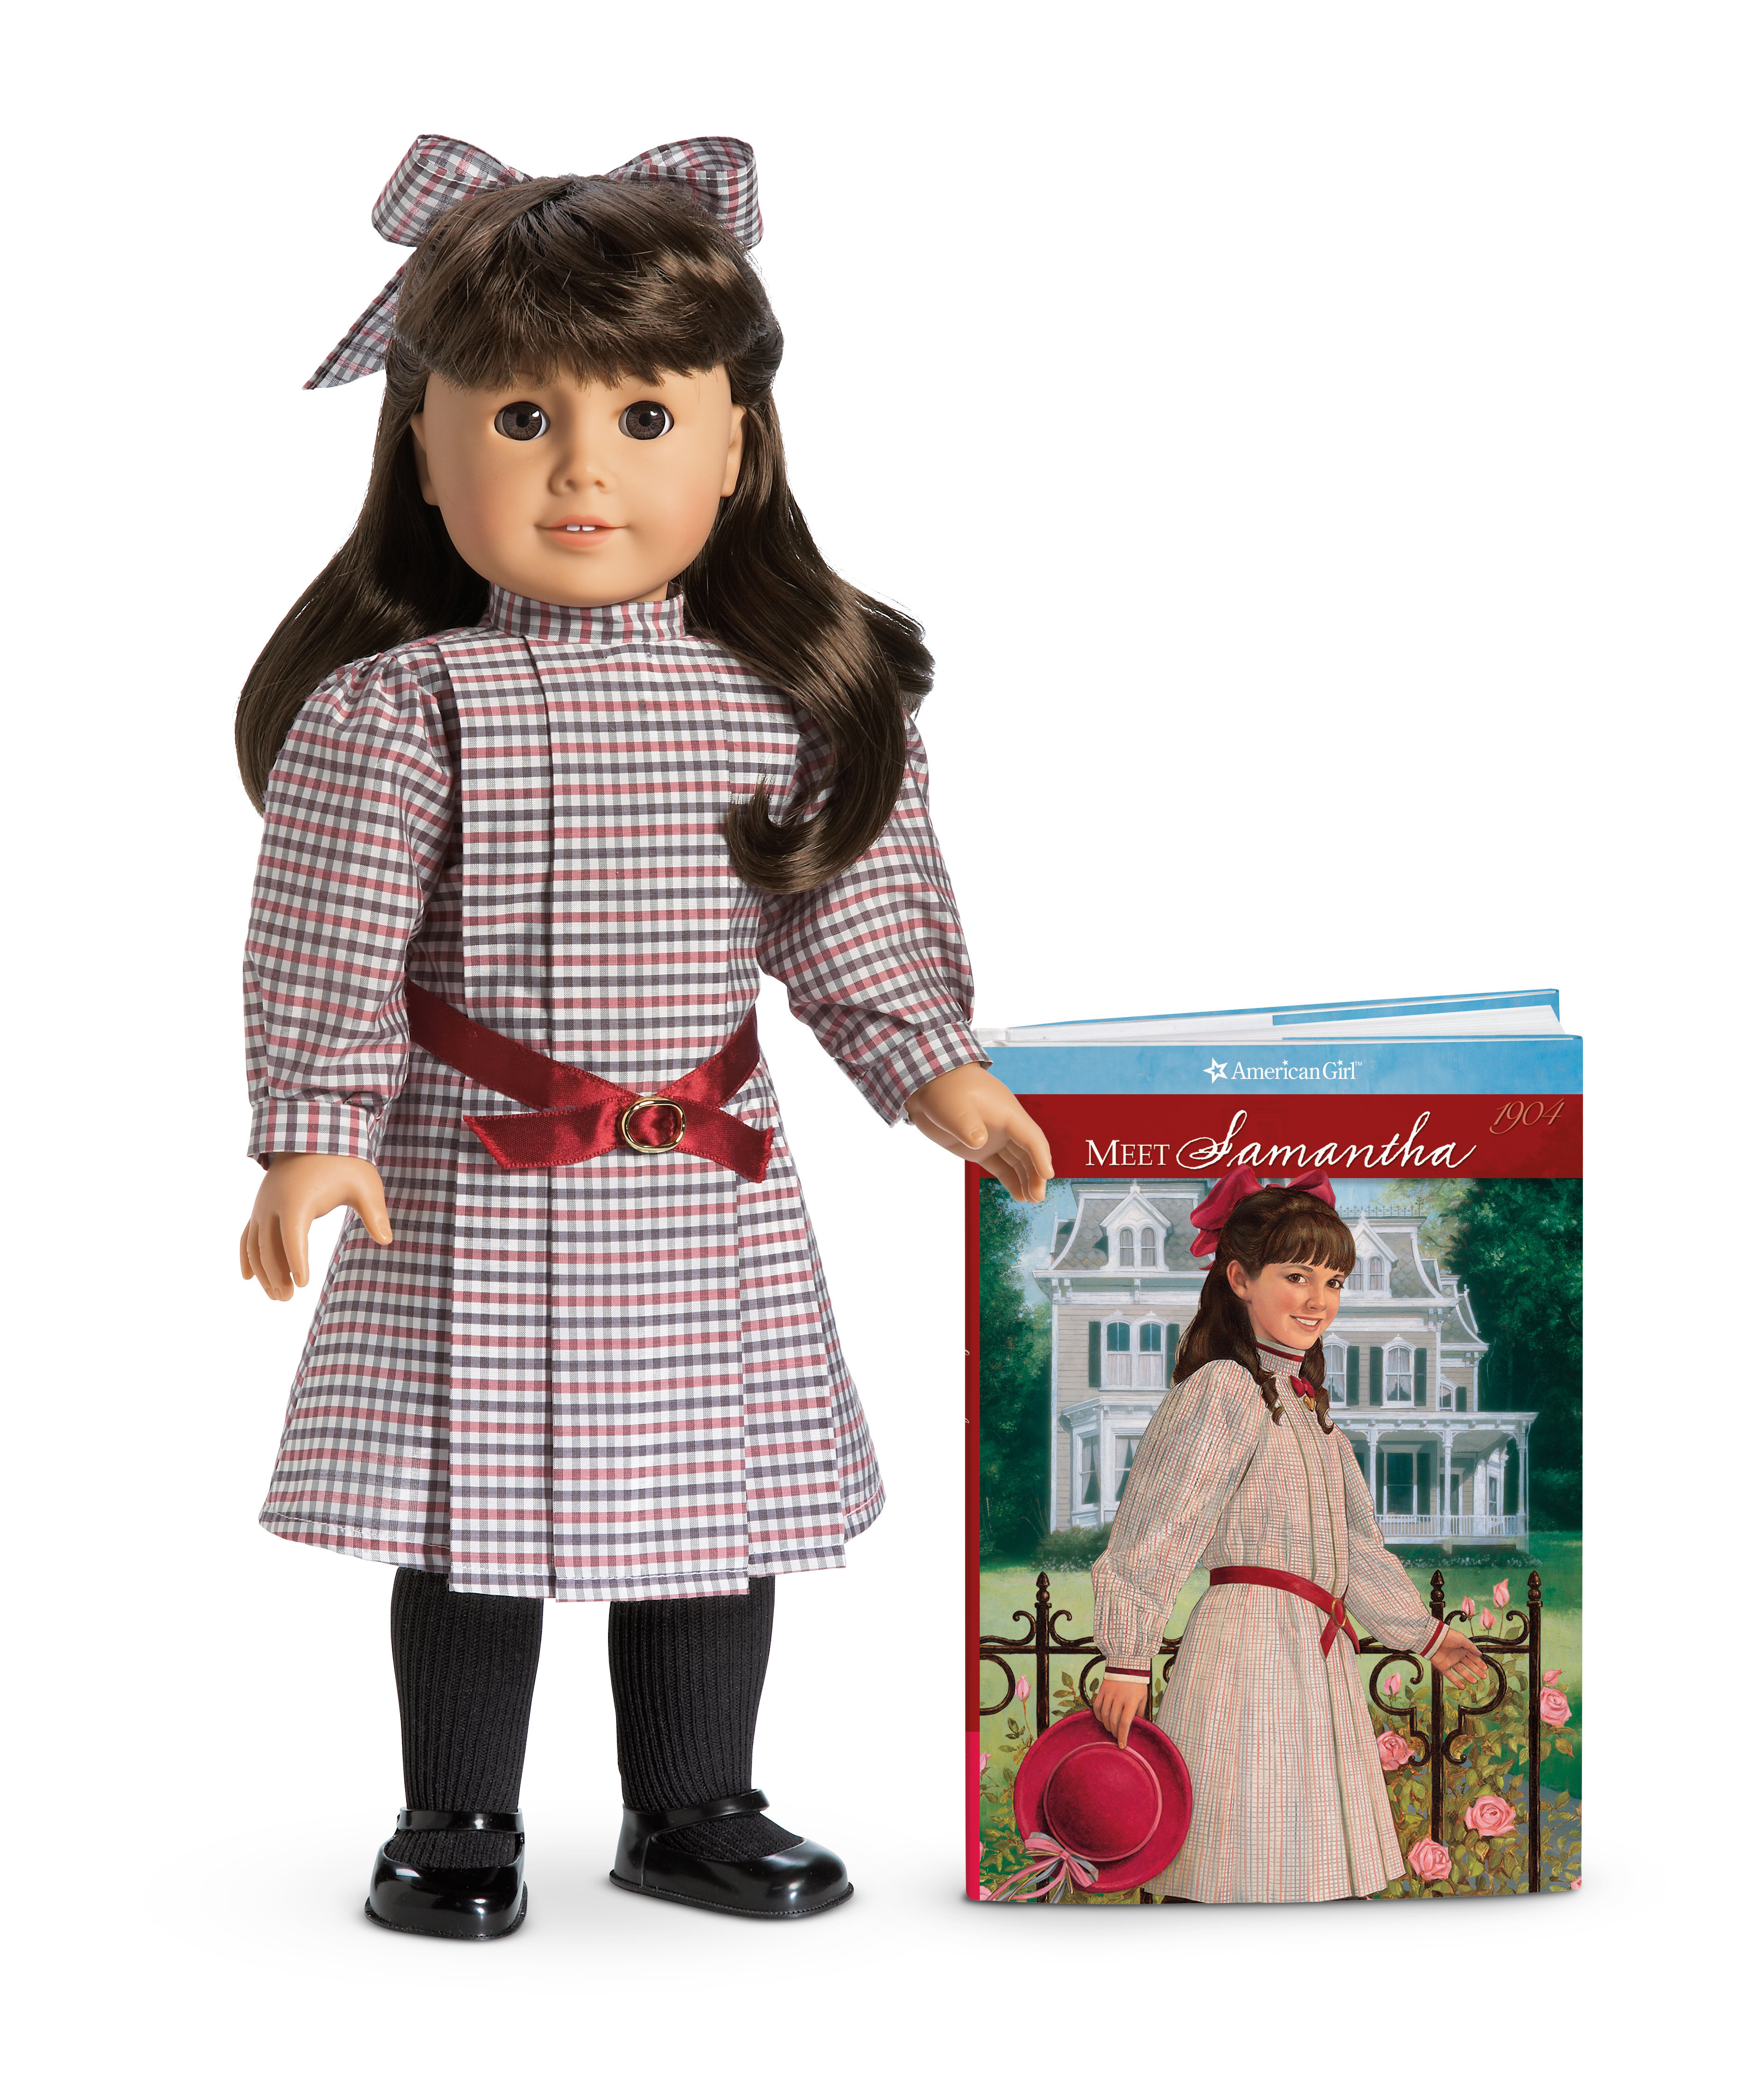 samantha american girl doll worth